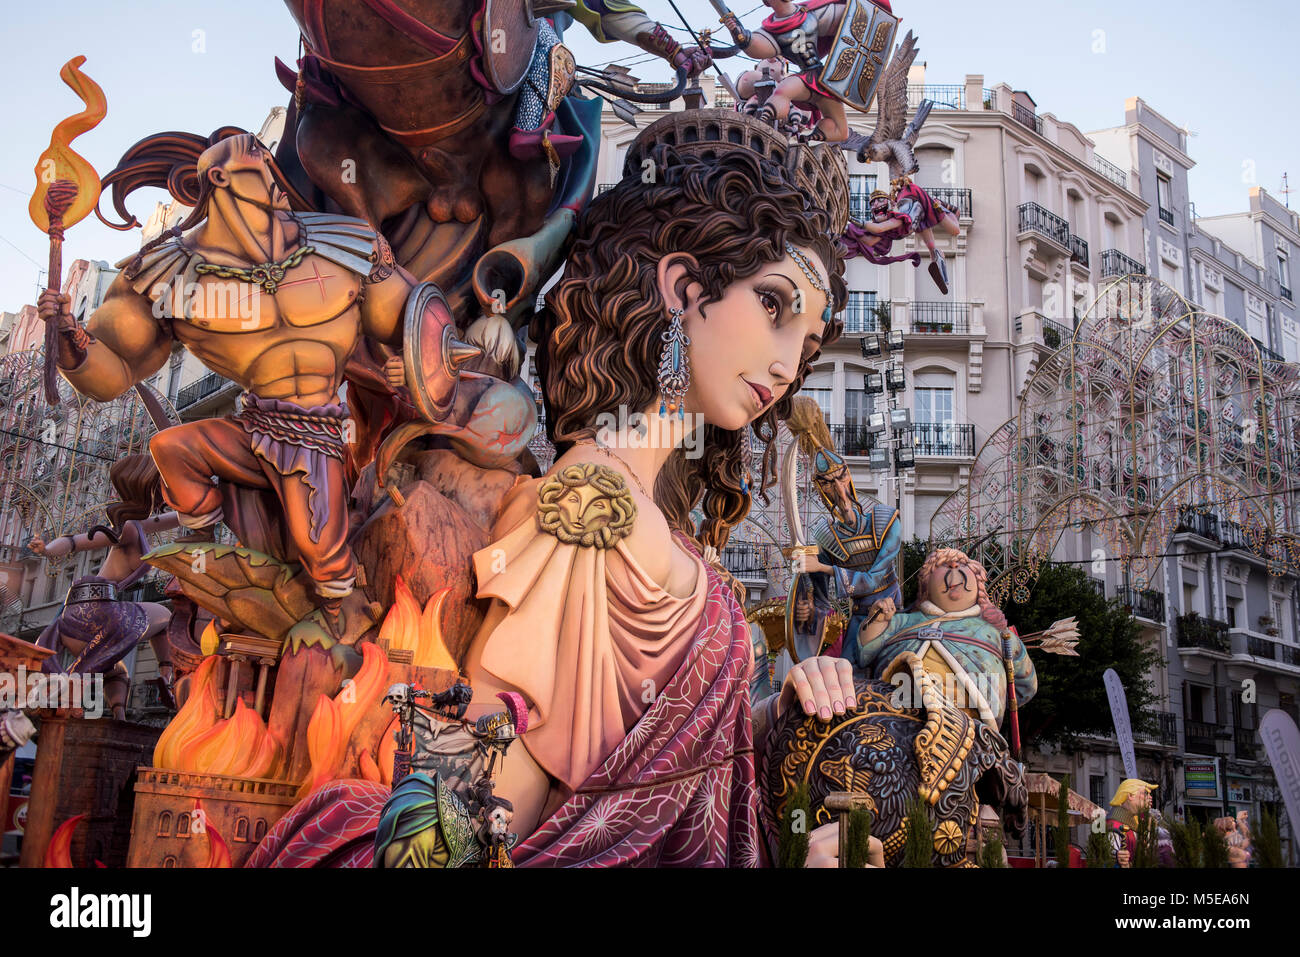 Una falla display scultura su una piazza della città durante l'annuale "Las Fallas Festival", Valencia, Spagna Foto Stock